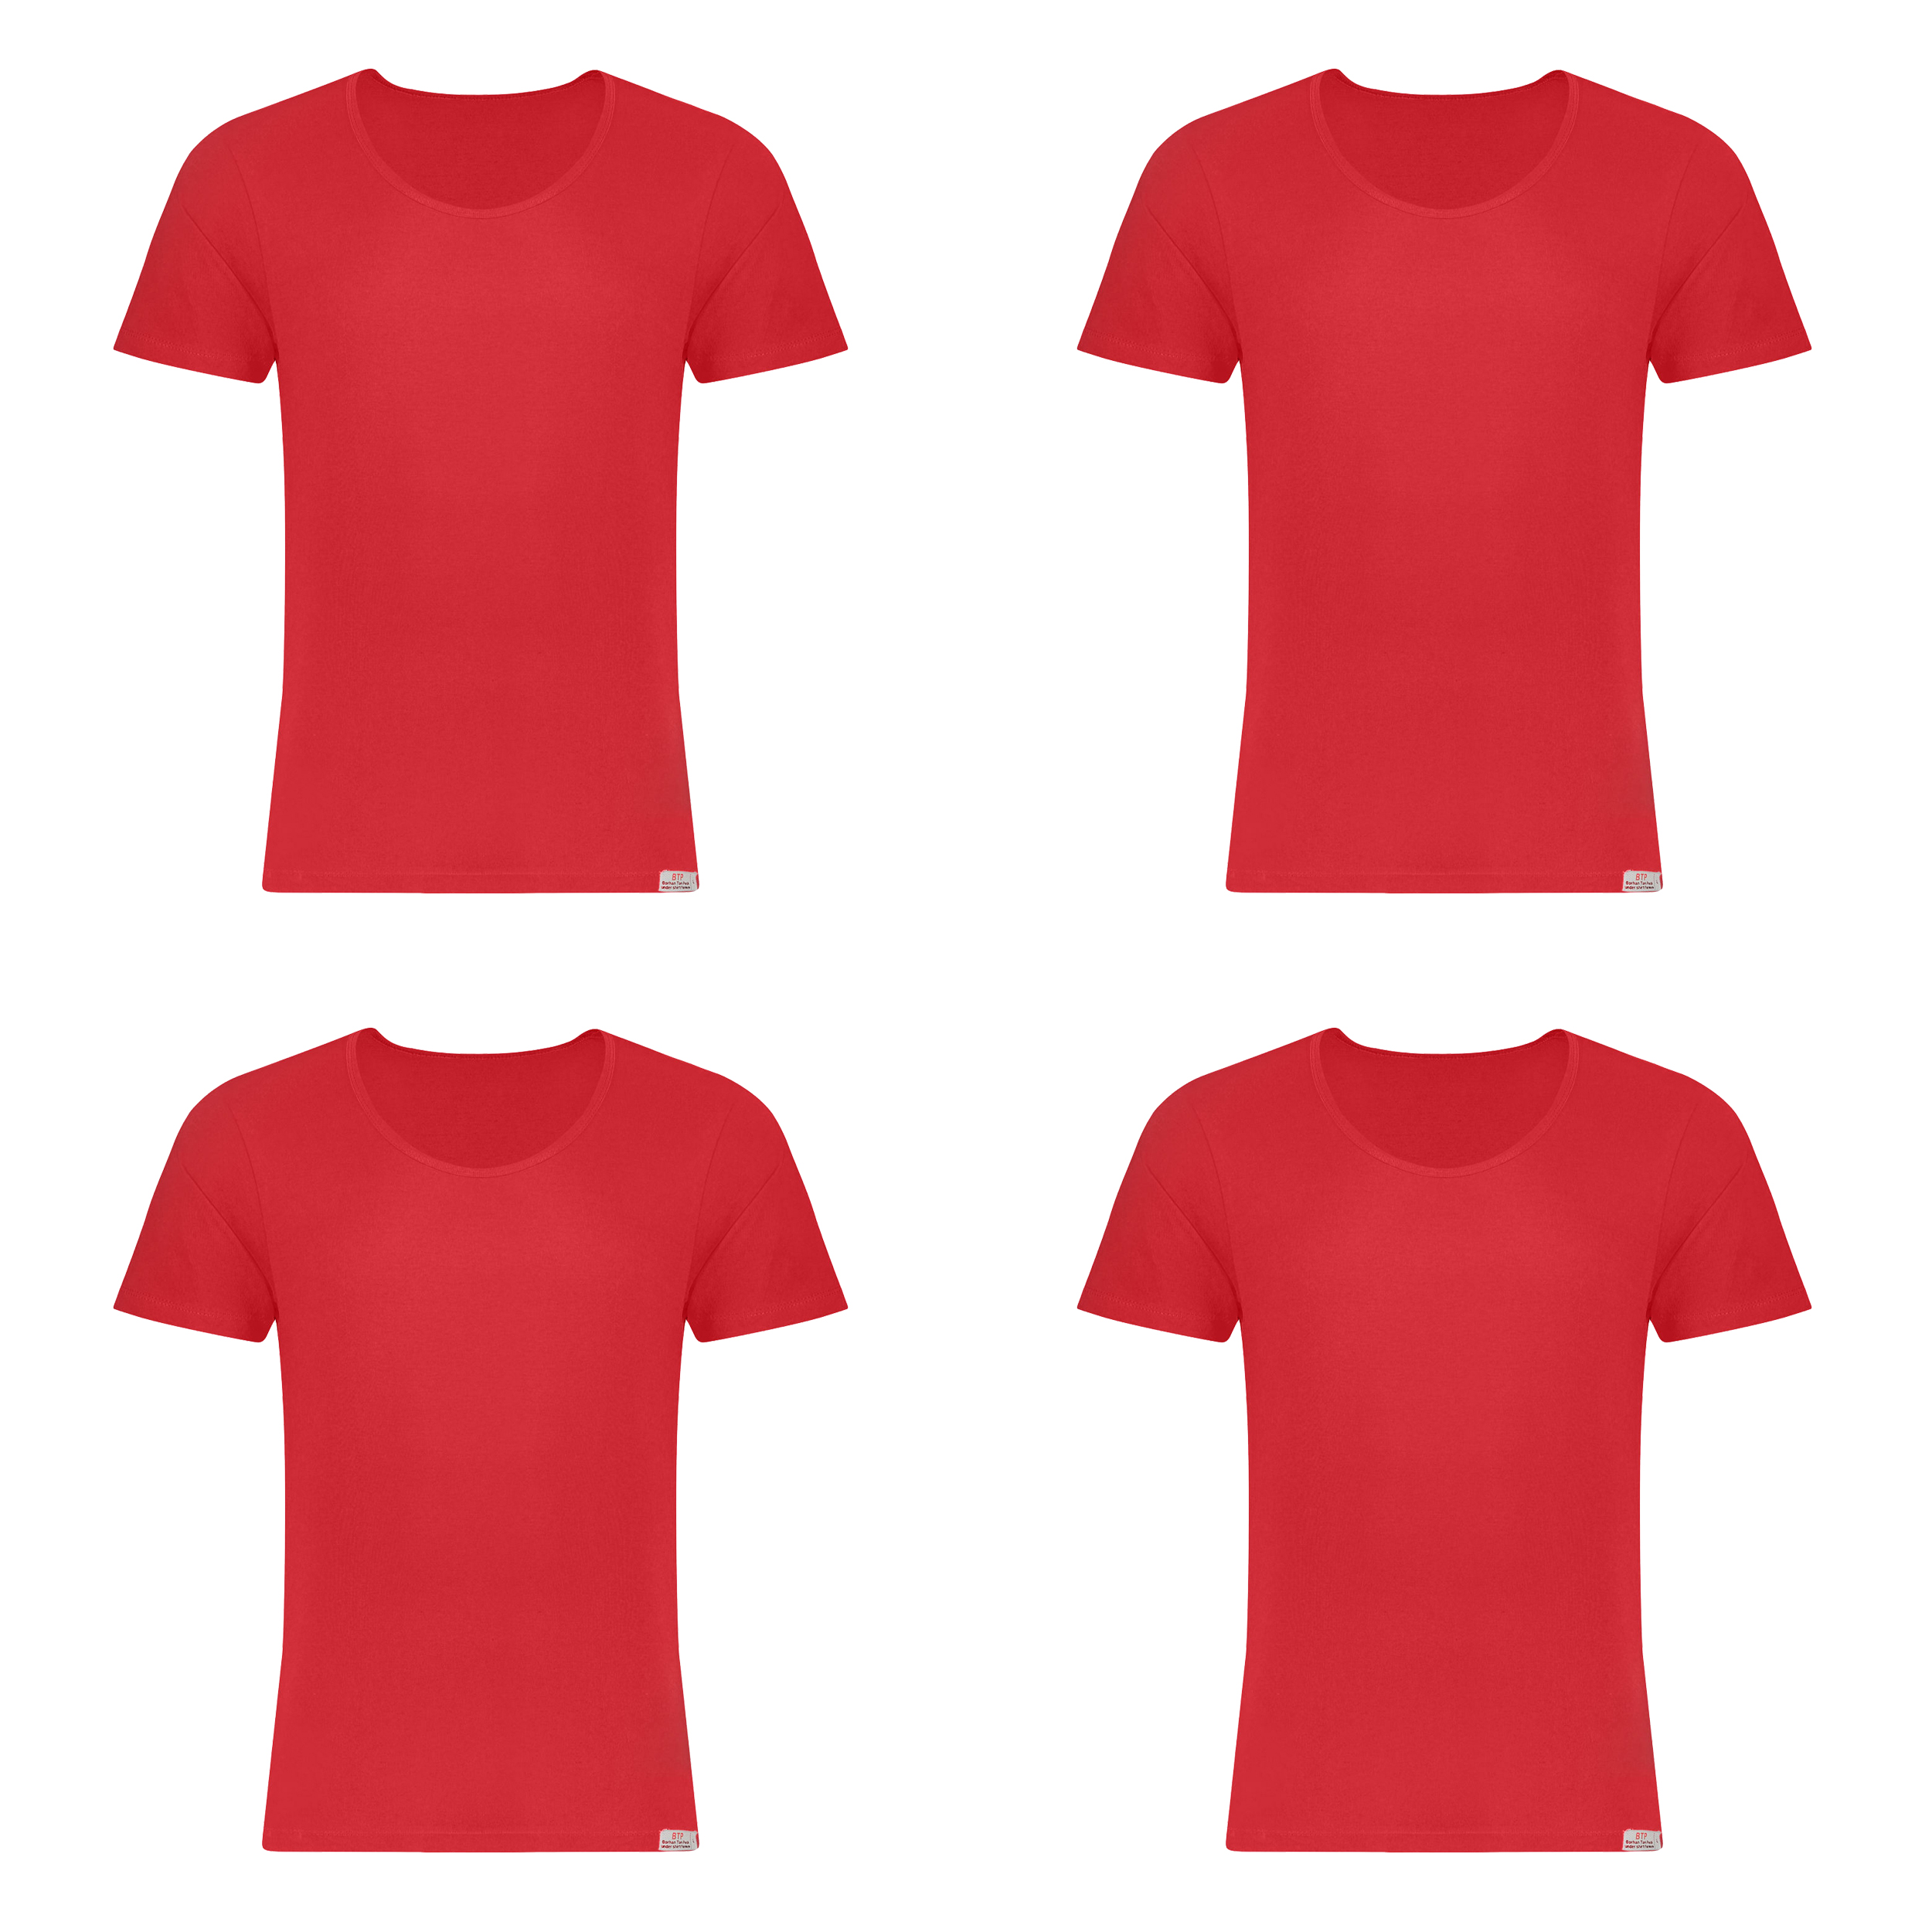 زیرپوش آستین دار مردانه برهان تن پوش مدل 2-02  رنگ قرمز بسته 4 عددی